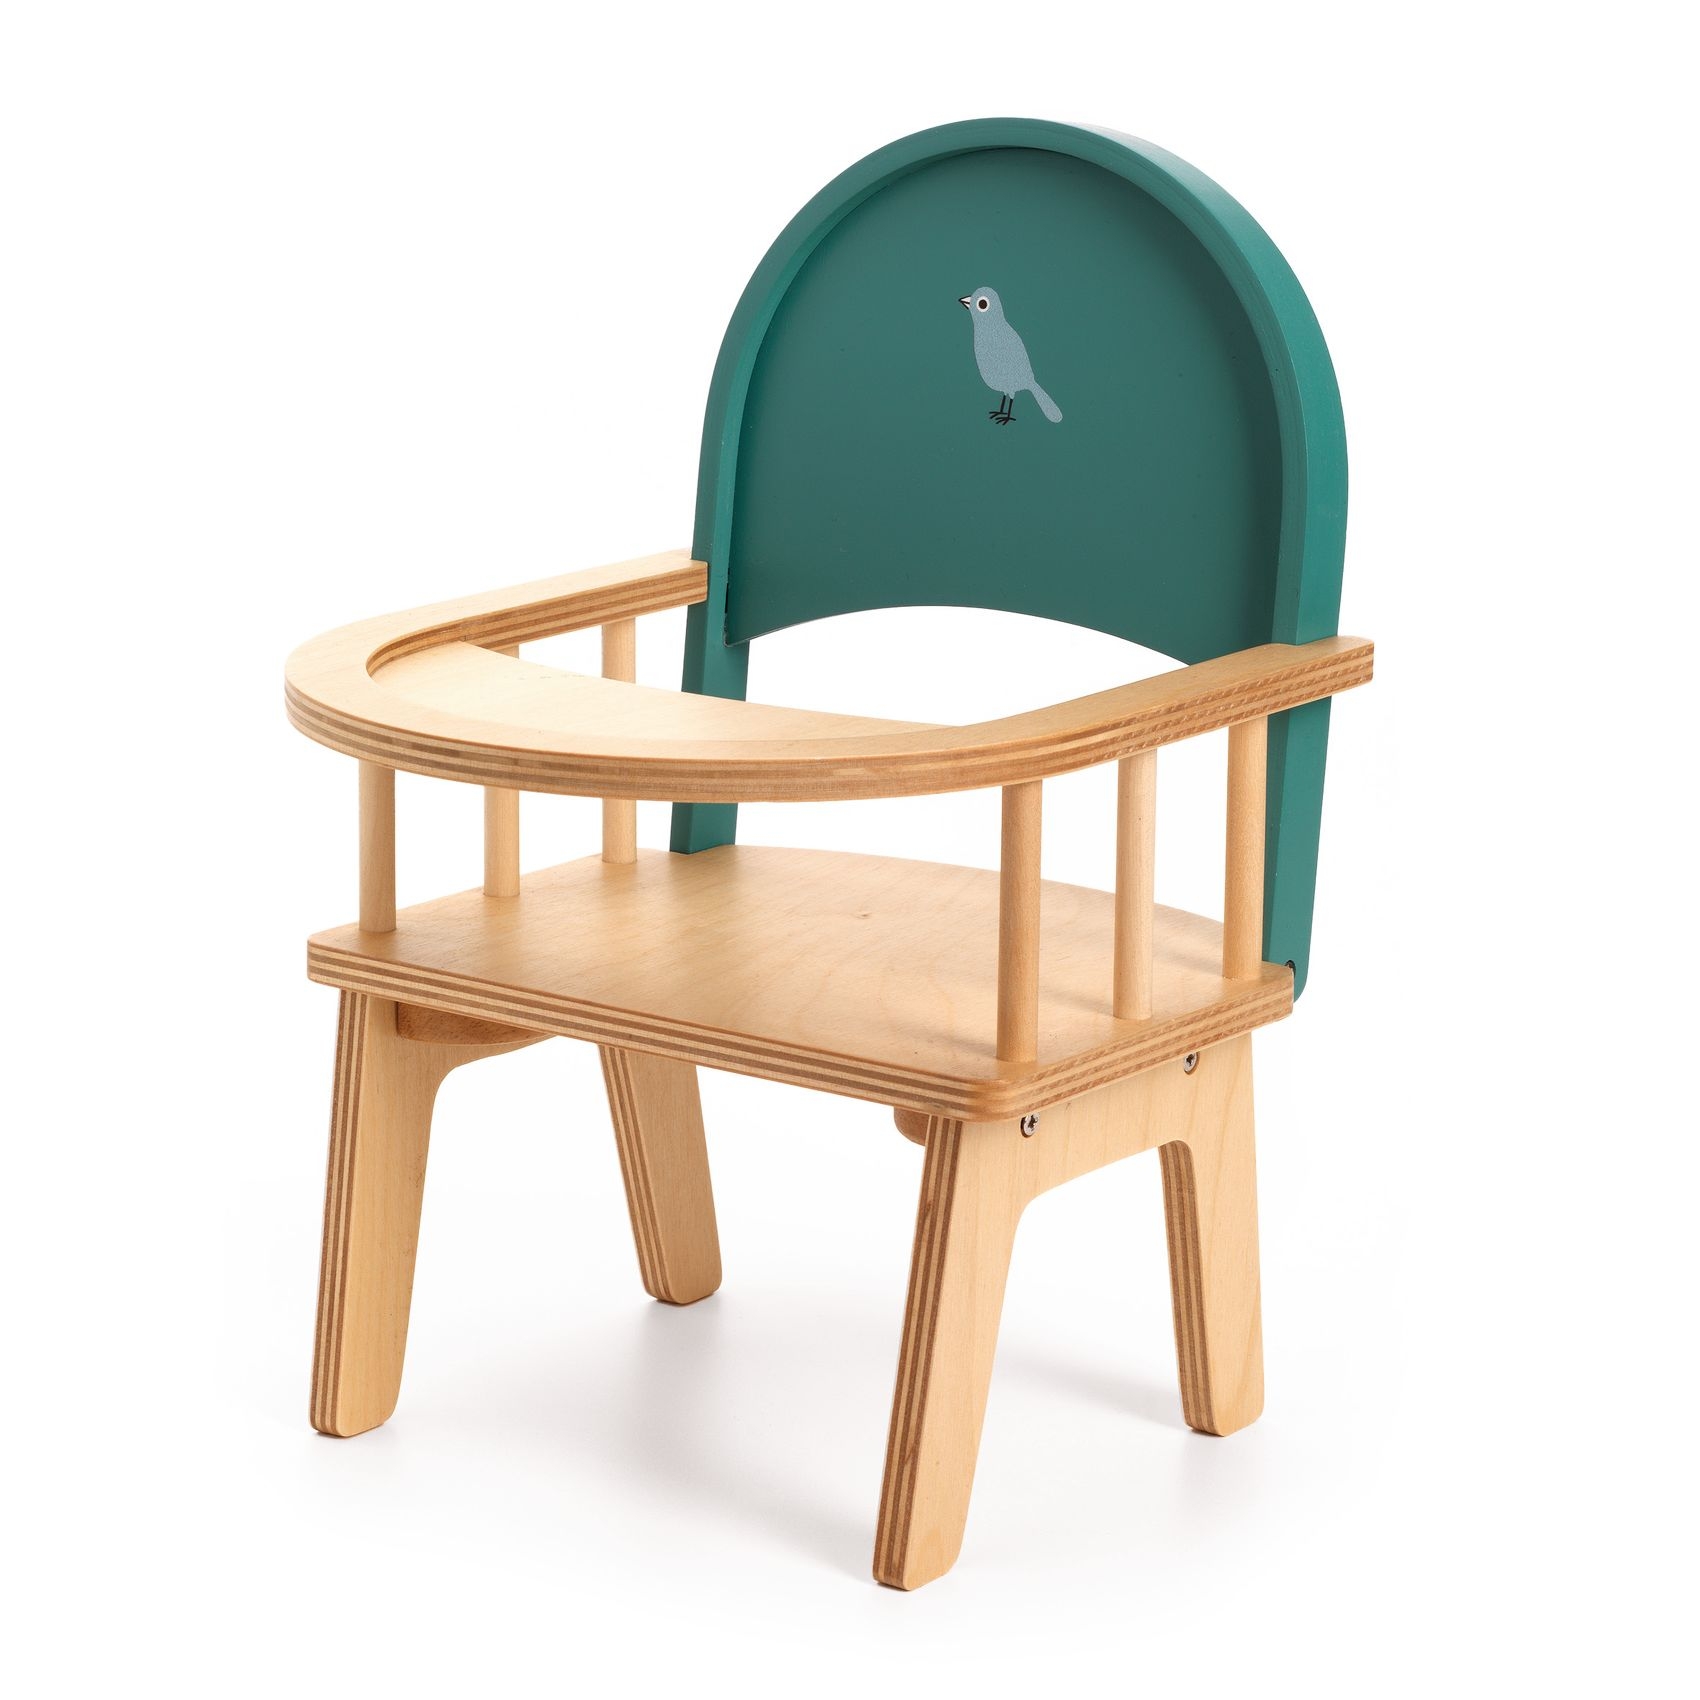 Babaetetés - Etetőszék játékbabáknak - Baby chair - 0